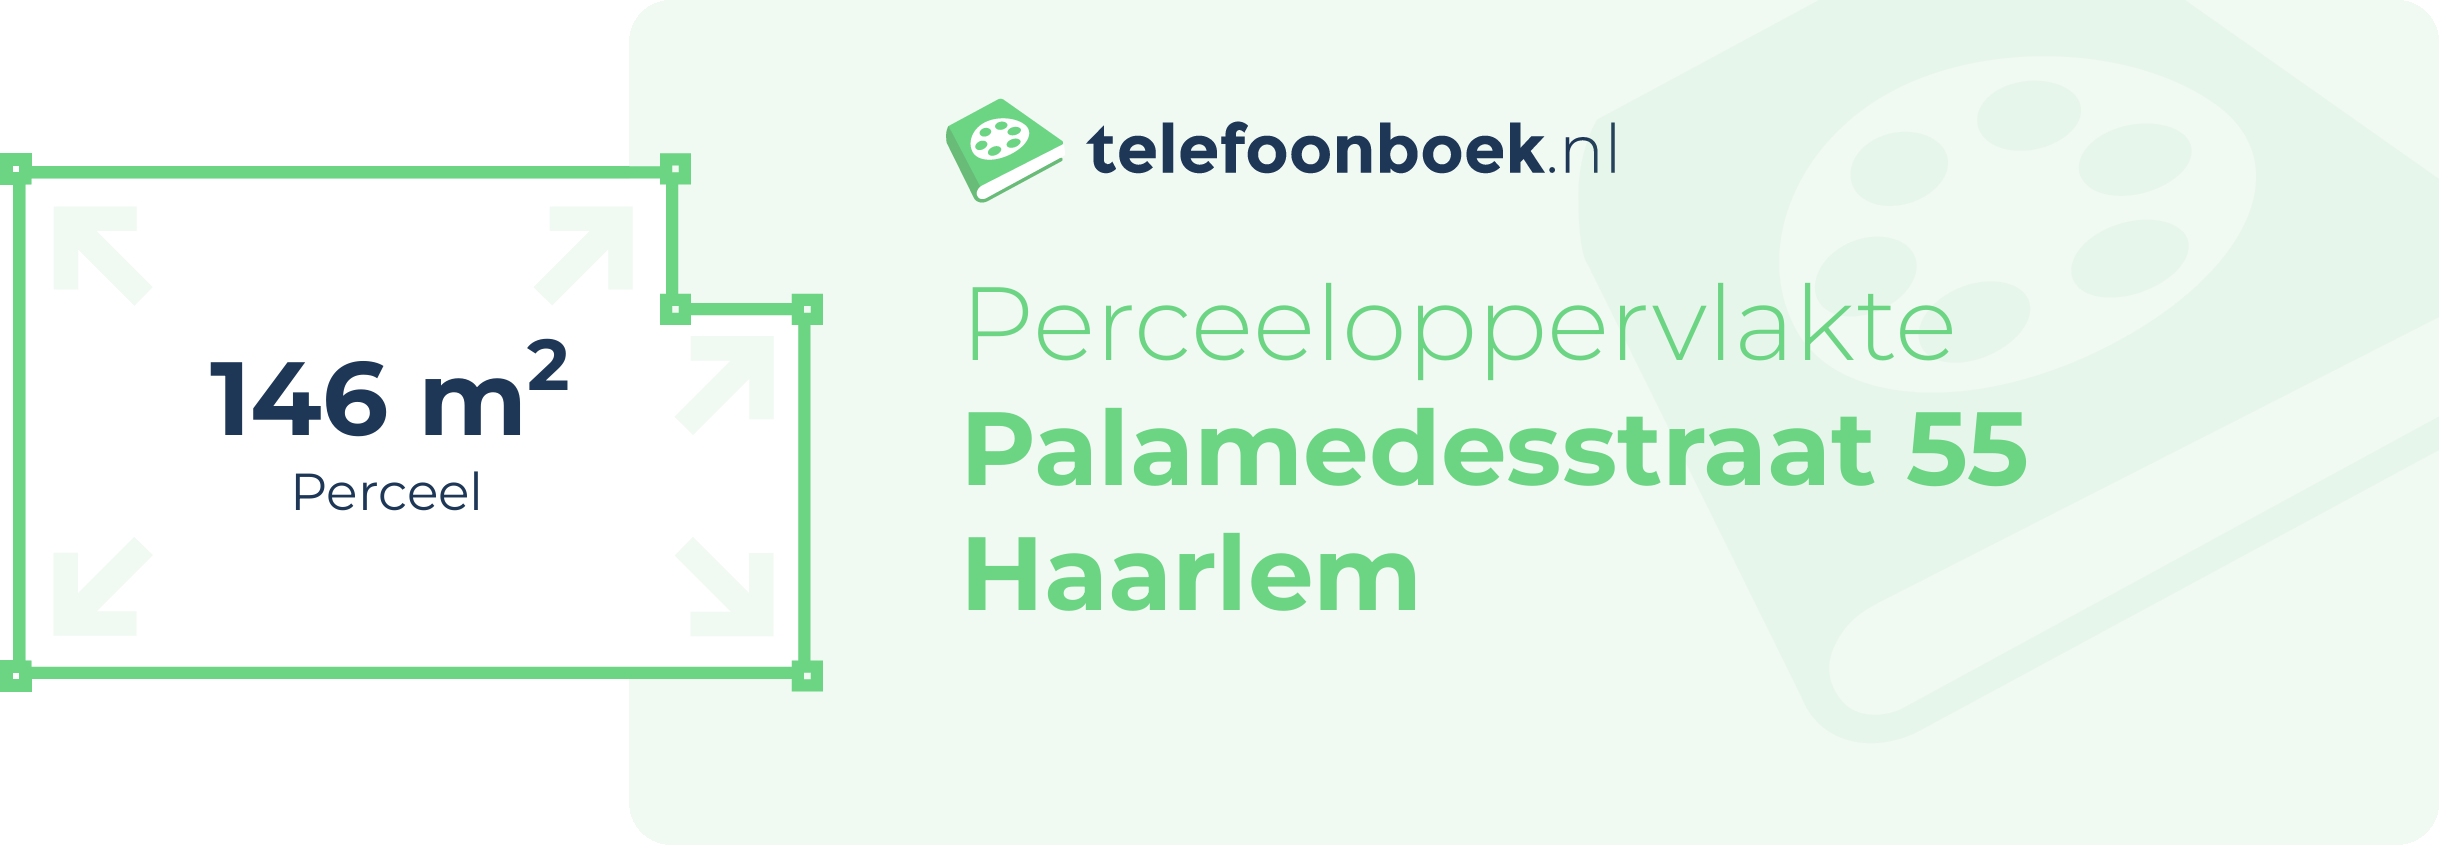 Perceeloppervlakte Palamedesstraat 55 Haarlem